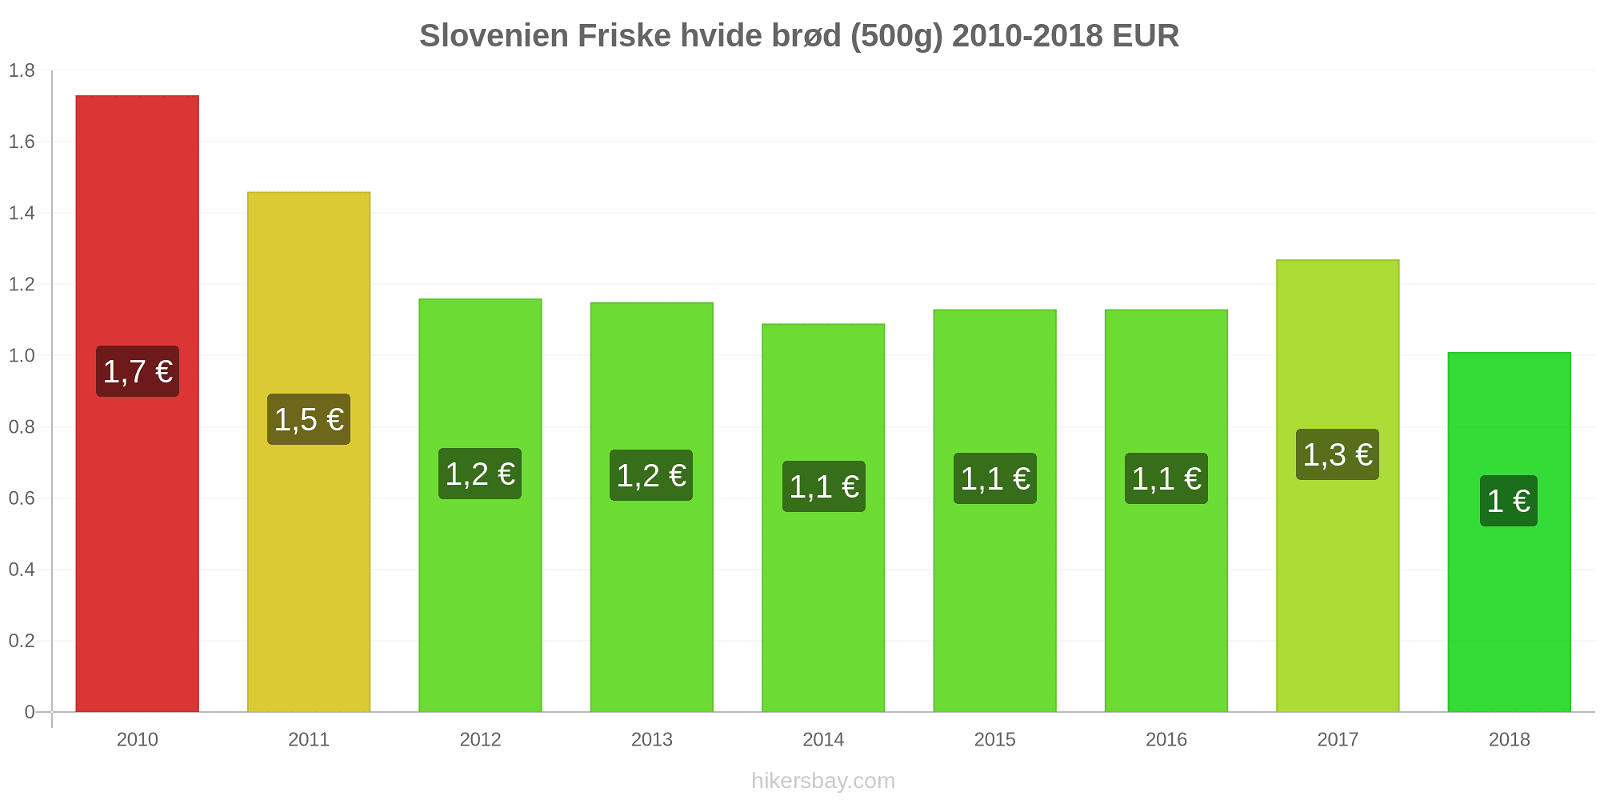 Slovenien prisændringer Friske hvide brød (500g) hikersbay.com